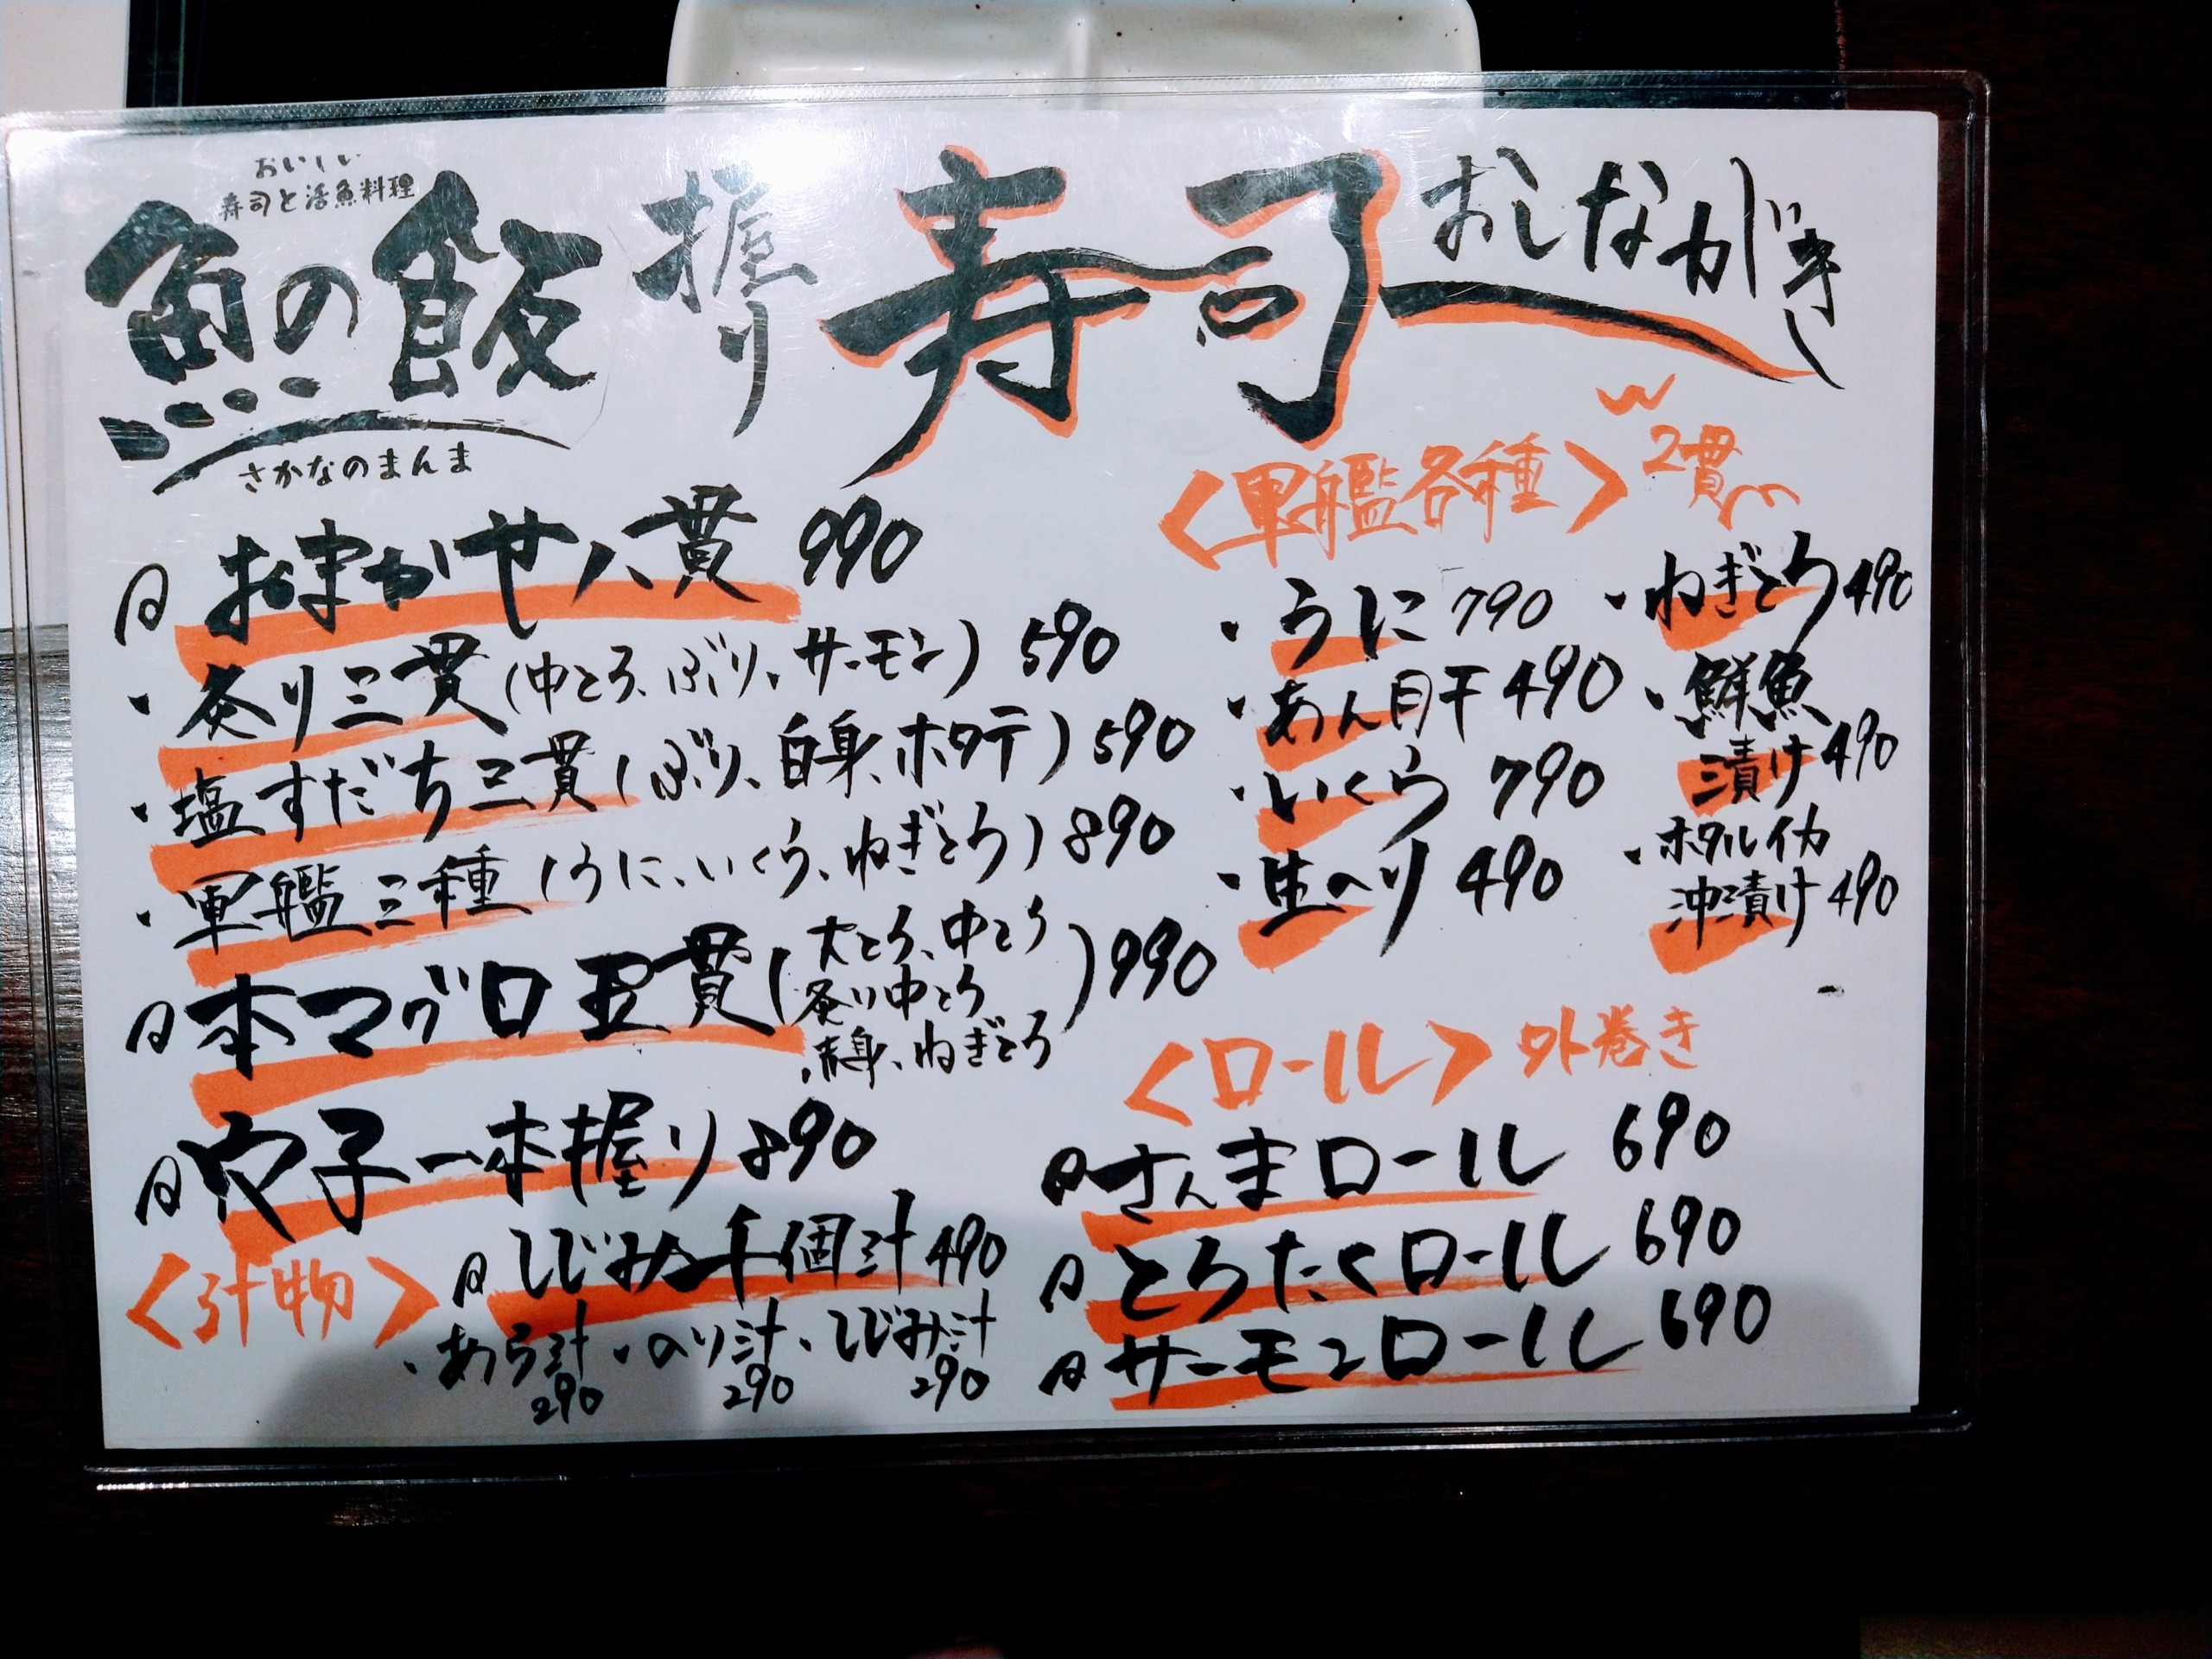 sakanano-manma-chofu-menu06